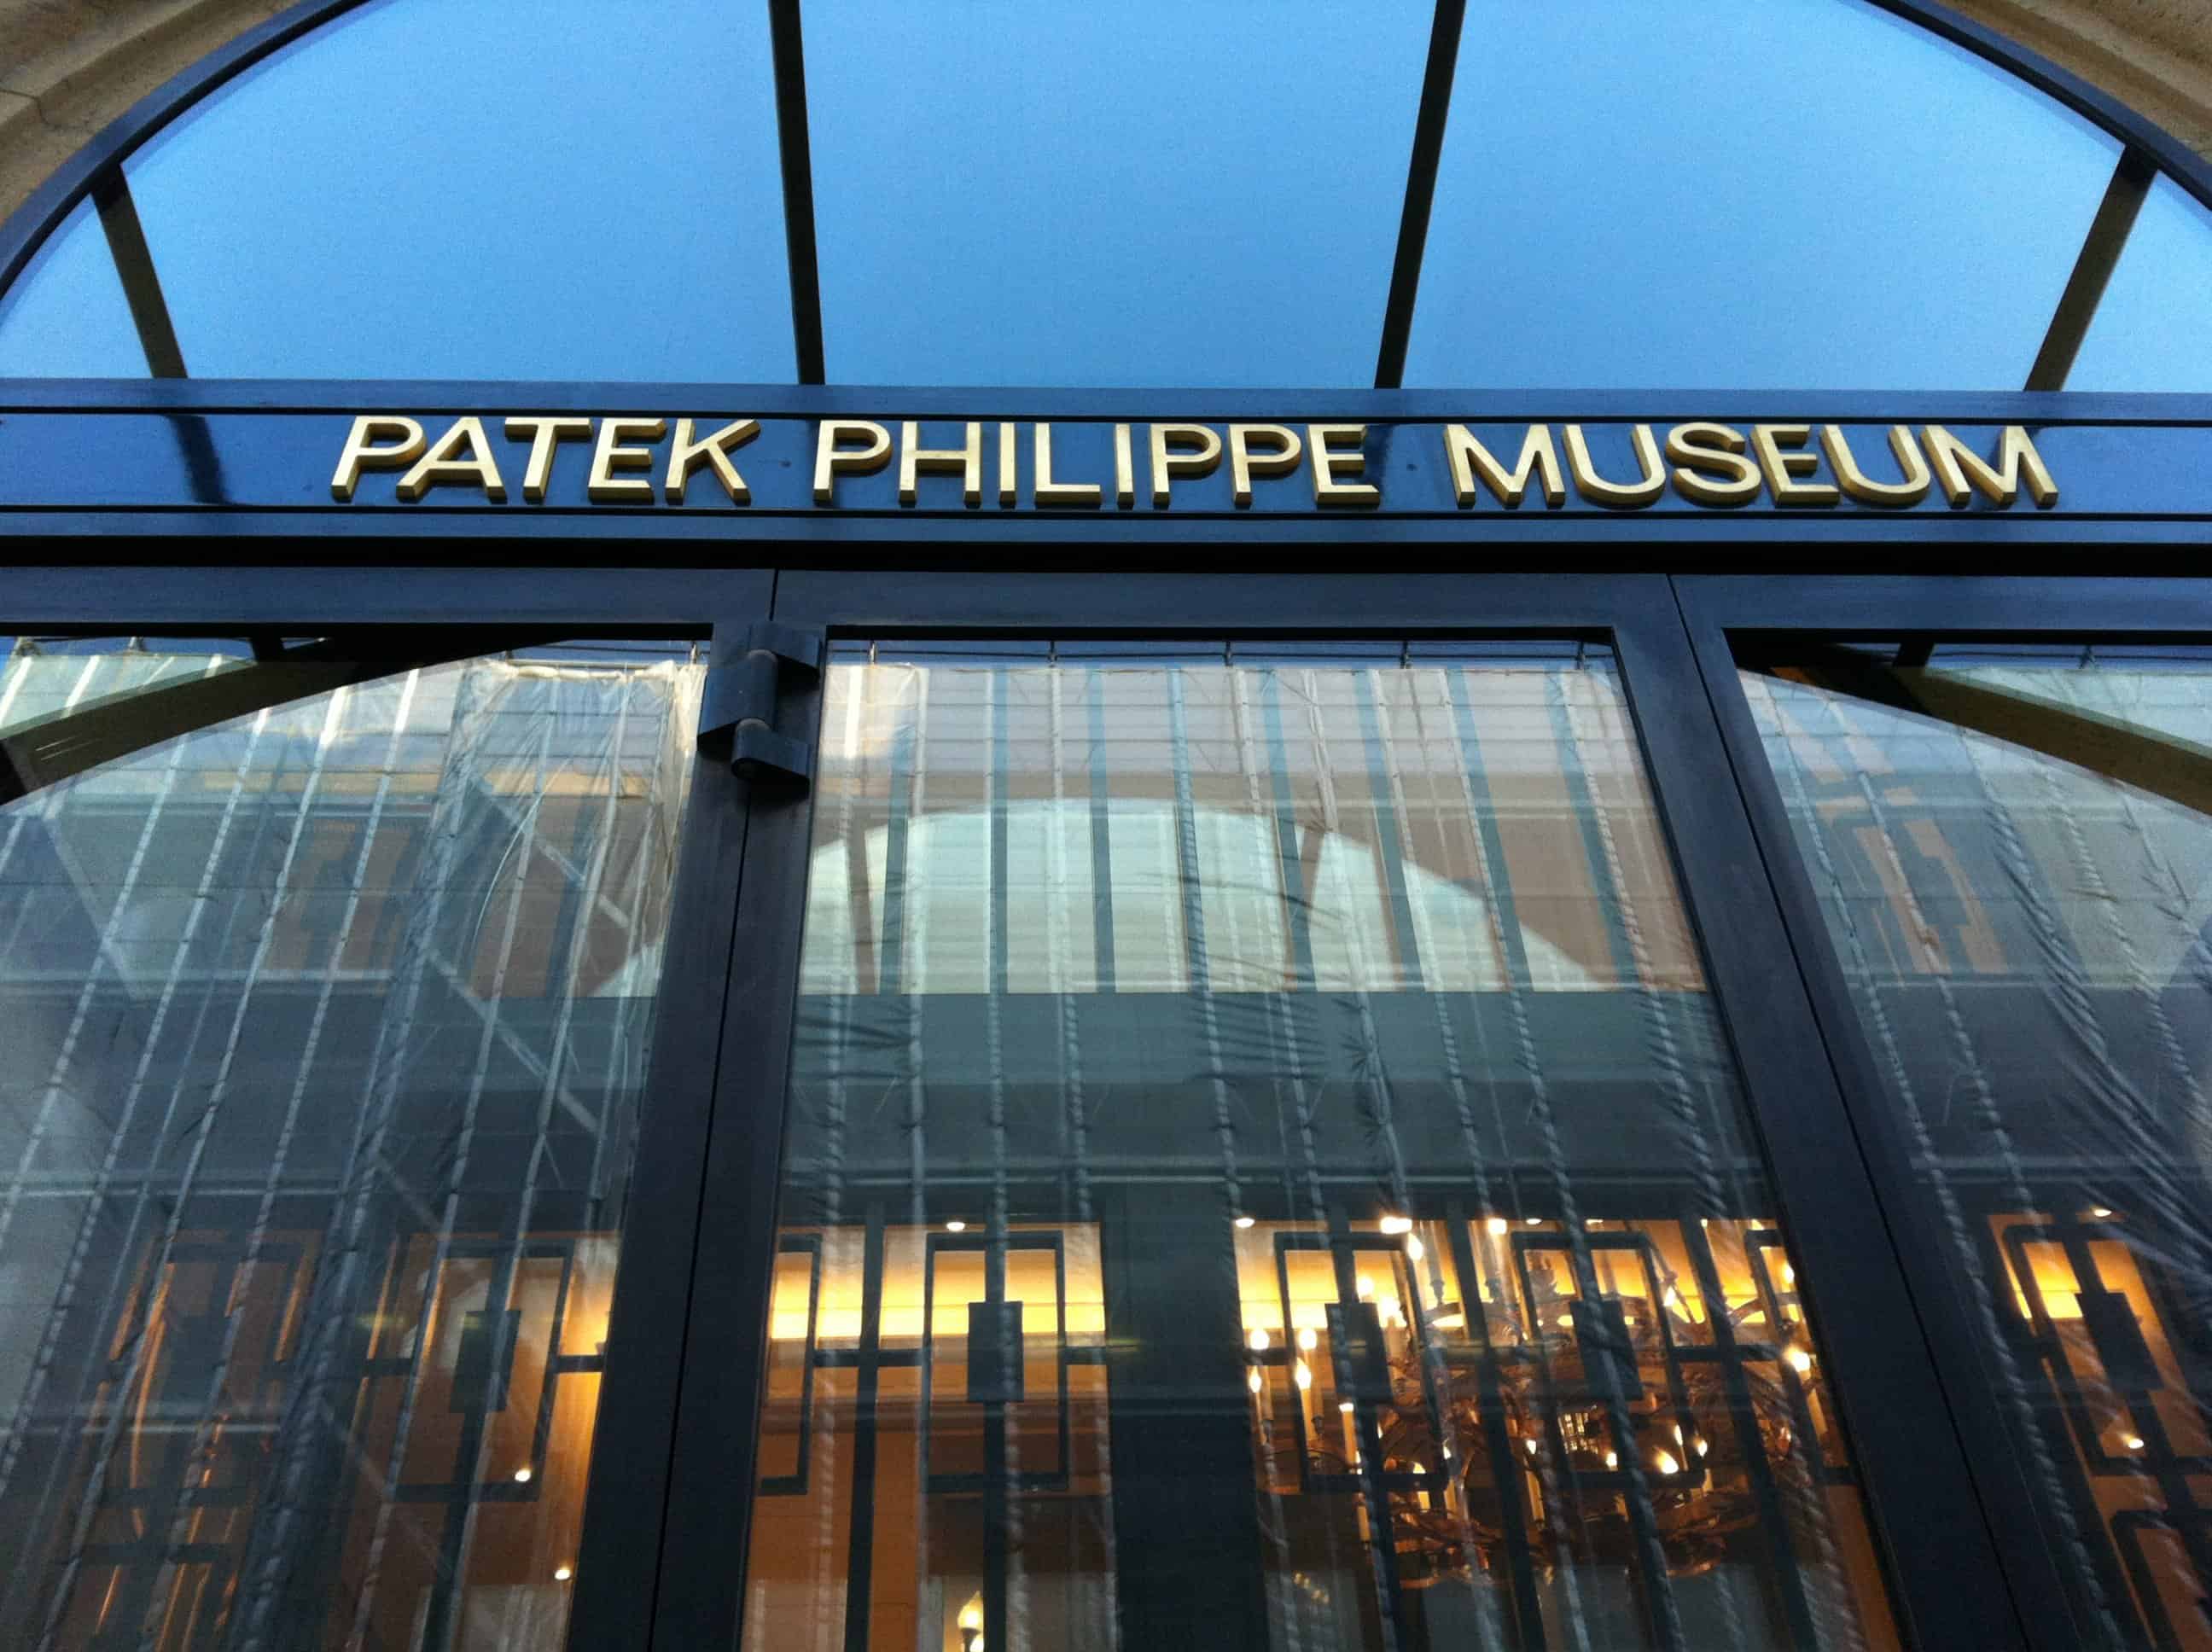 افضل 4 انشطة عند متحف باتيك فيليب جنيف سويسرا